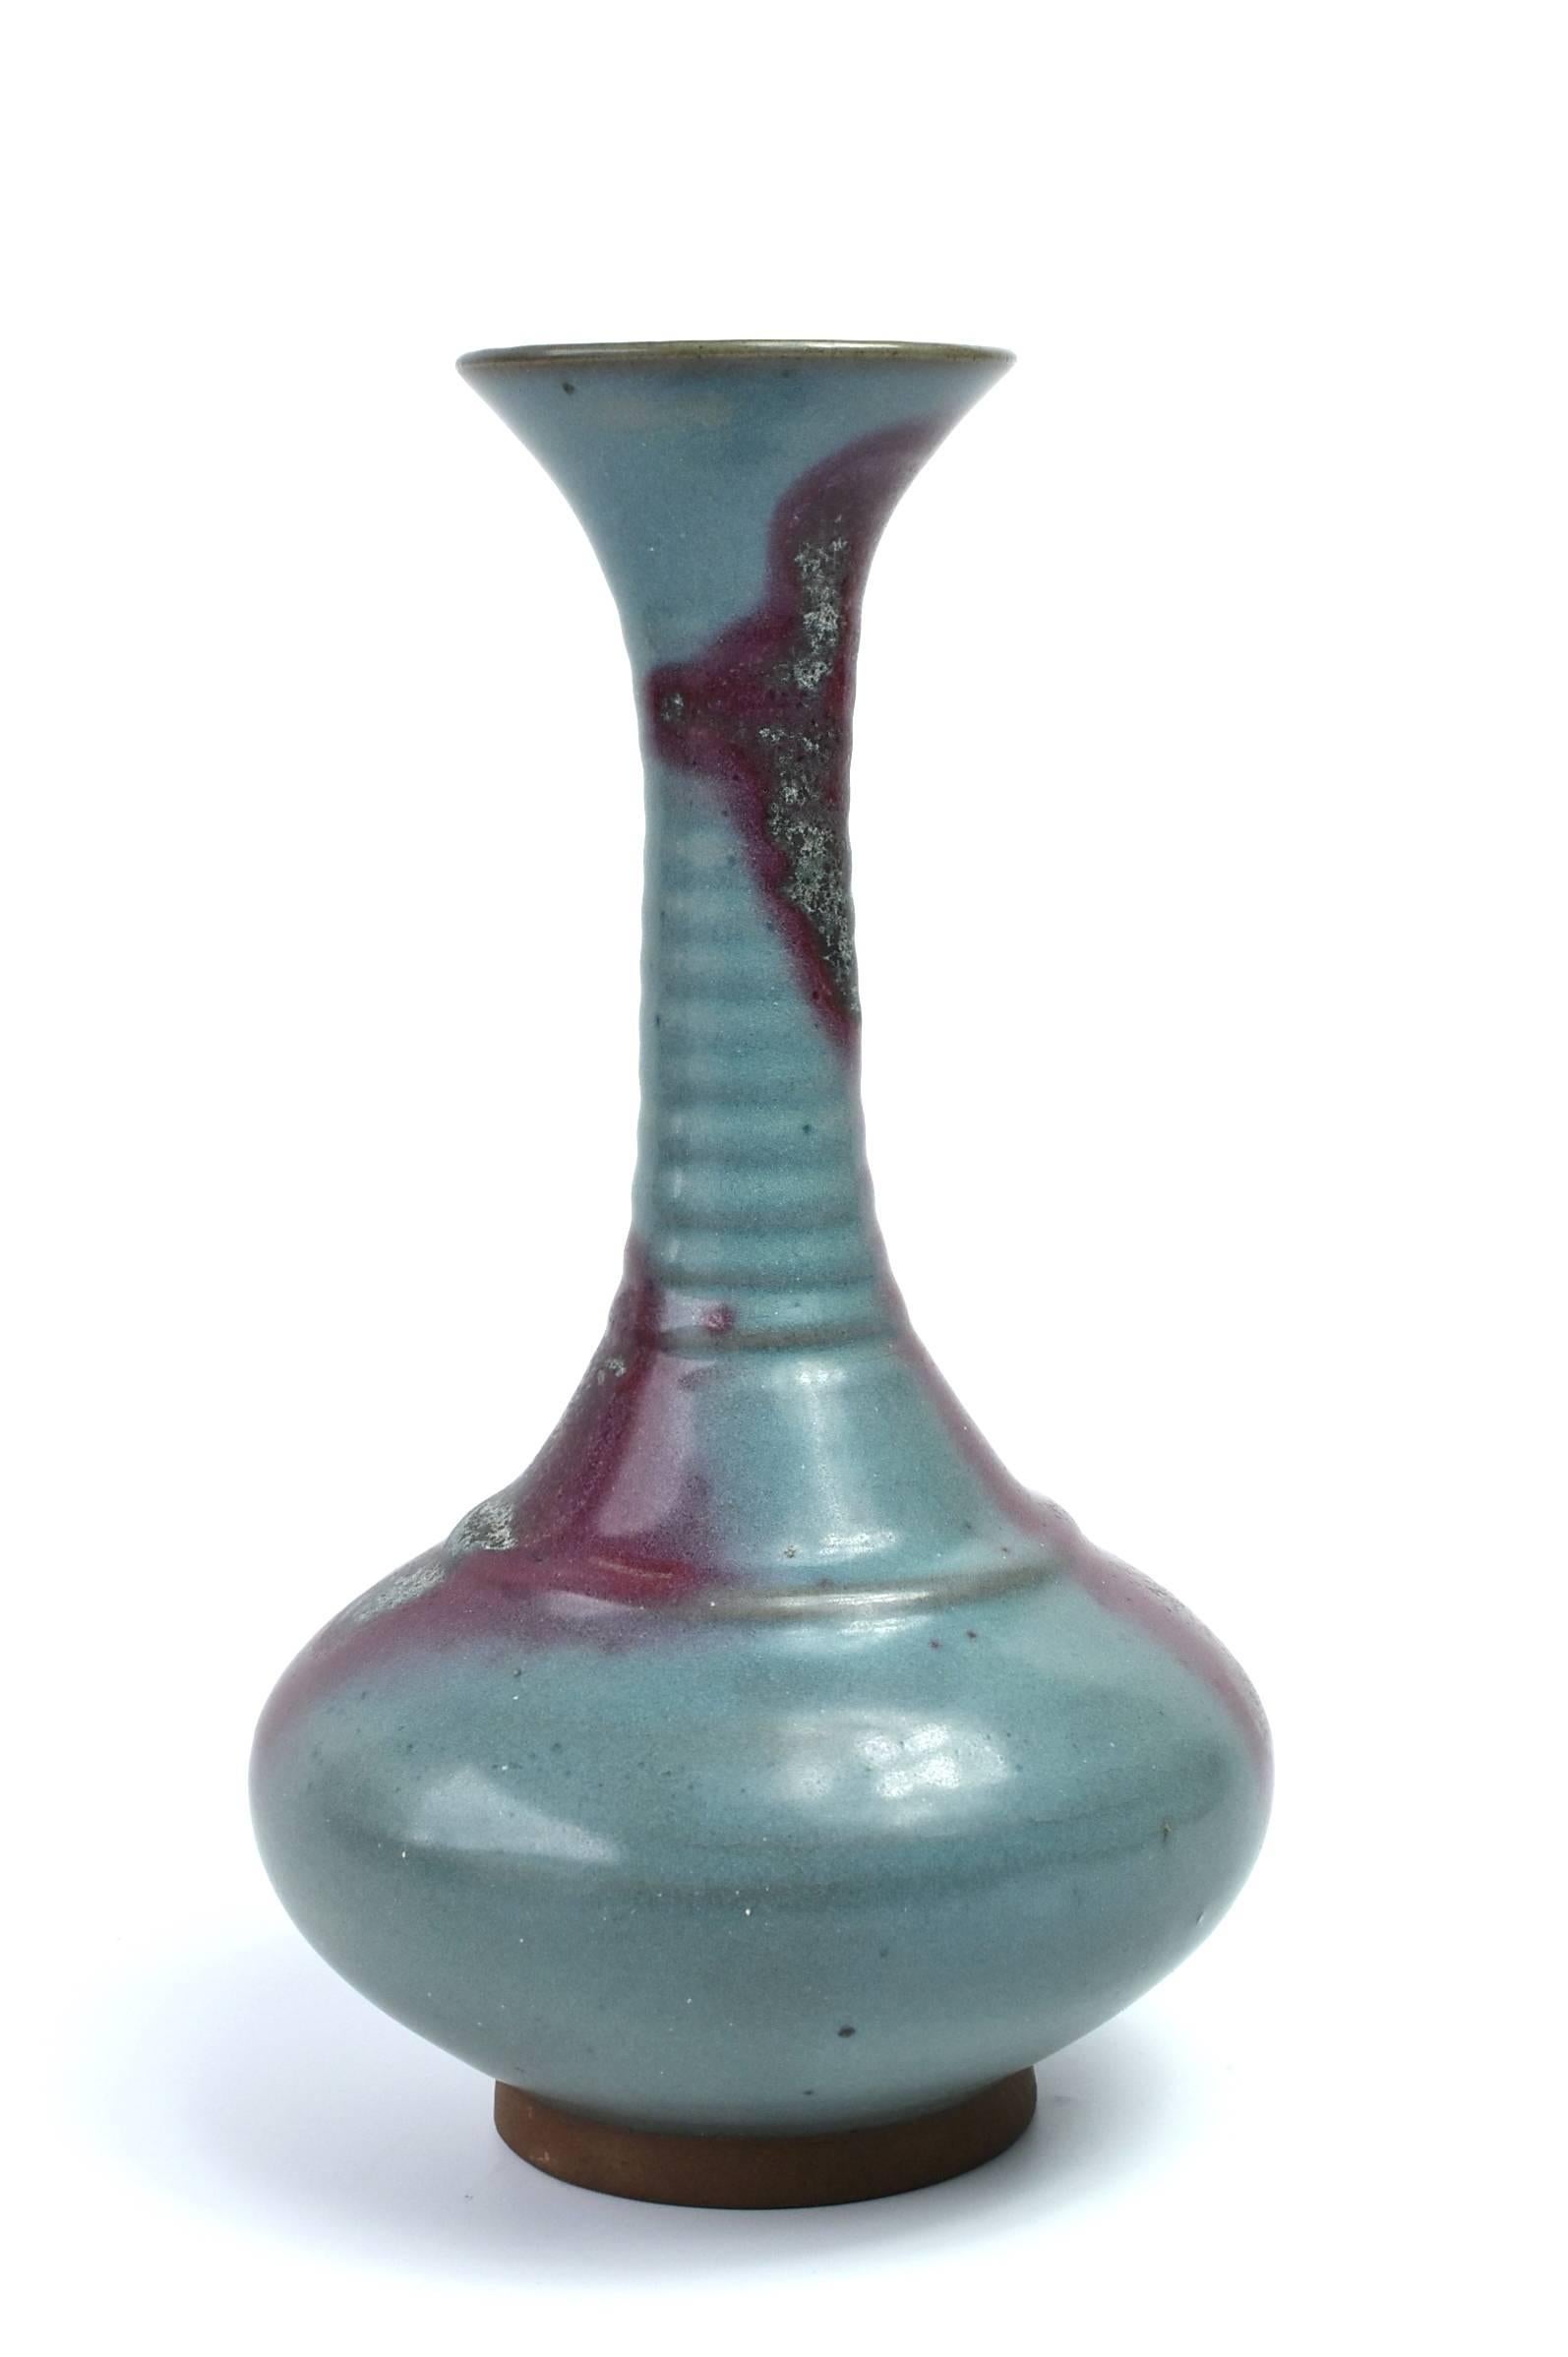 Eine prächtige Yu Tang Chun Vase aus Jun Ware Porzellan.

Die Jun-Ware ist einer der wichtigsten Brennöfen in China. Der aus der Tang-Dynastie stammende Jun-Ofen produziert die prächtigsten Farben im freien Stil. Porzellan kommt völlig farblos in